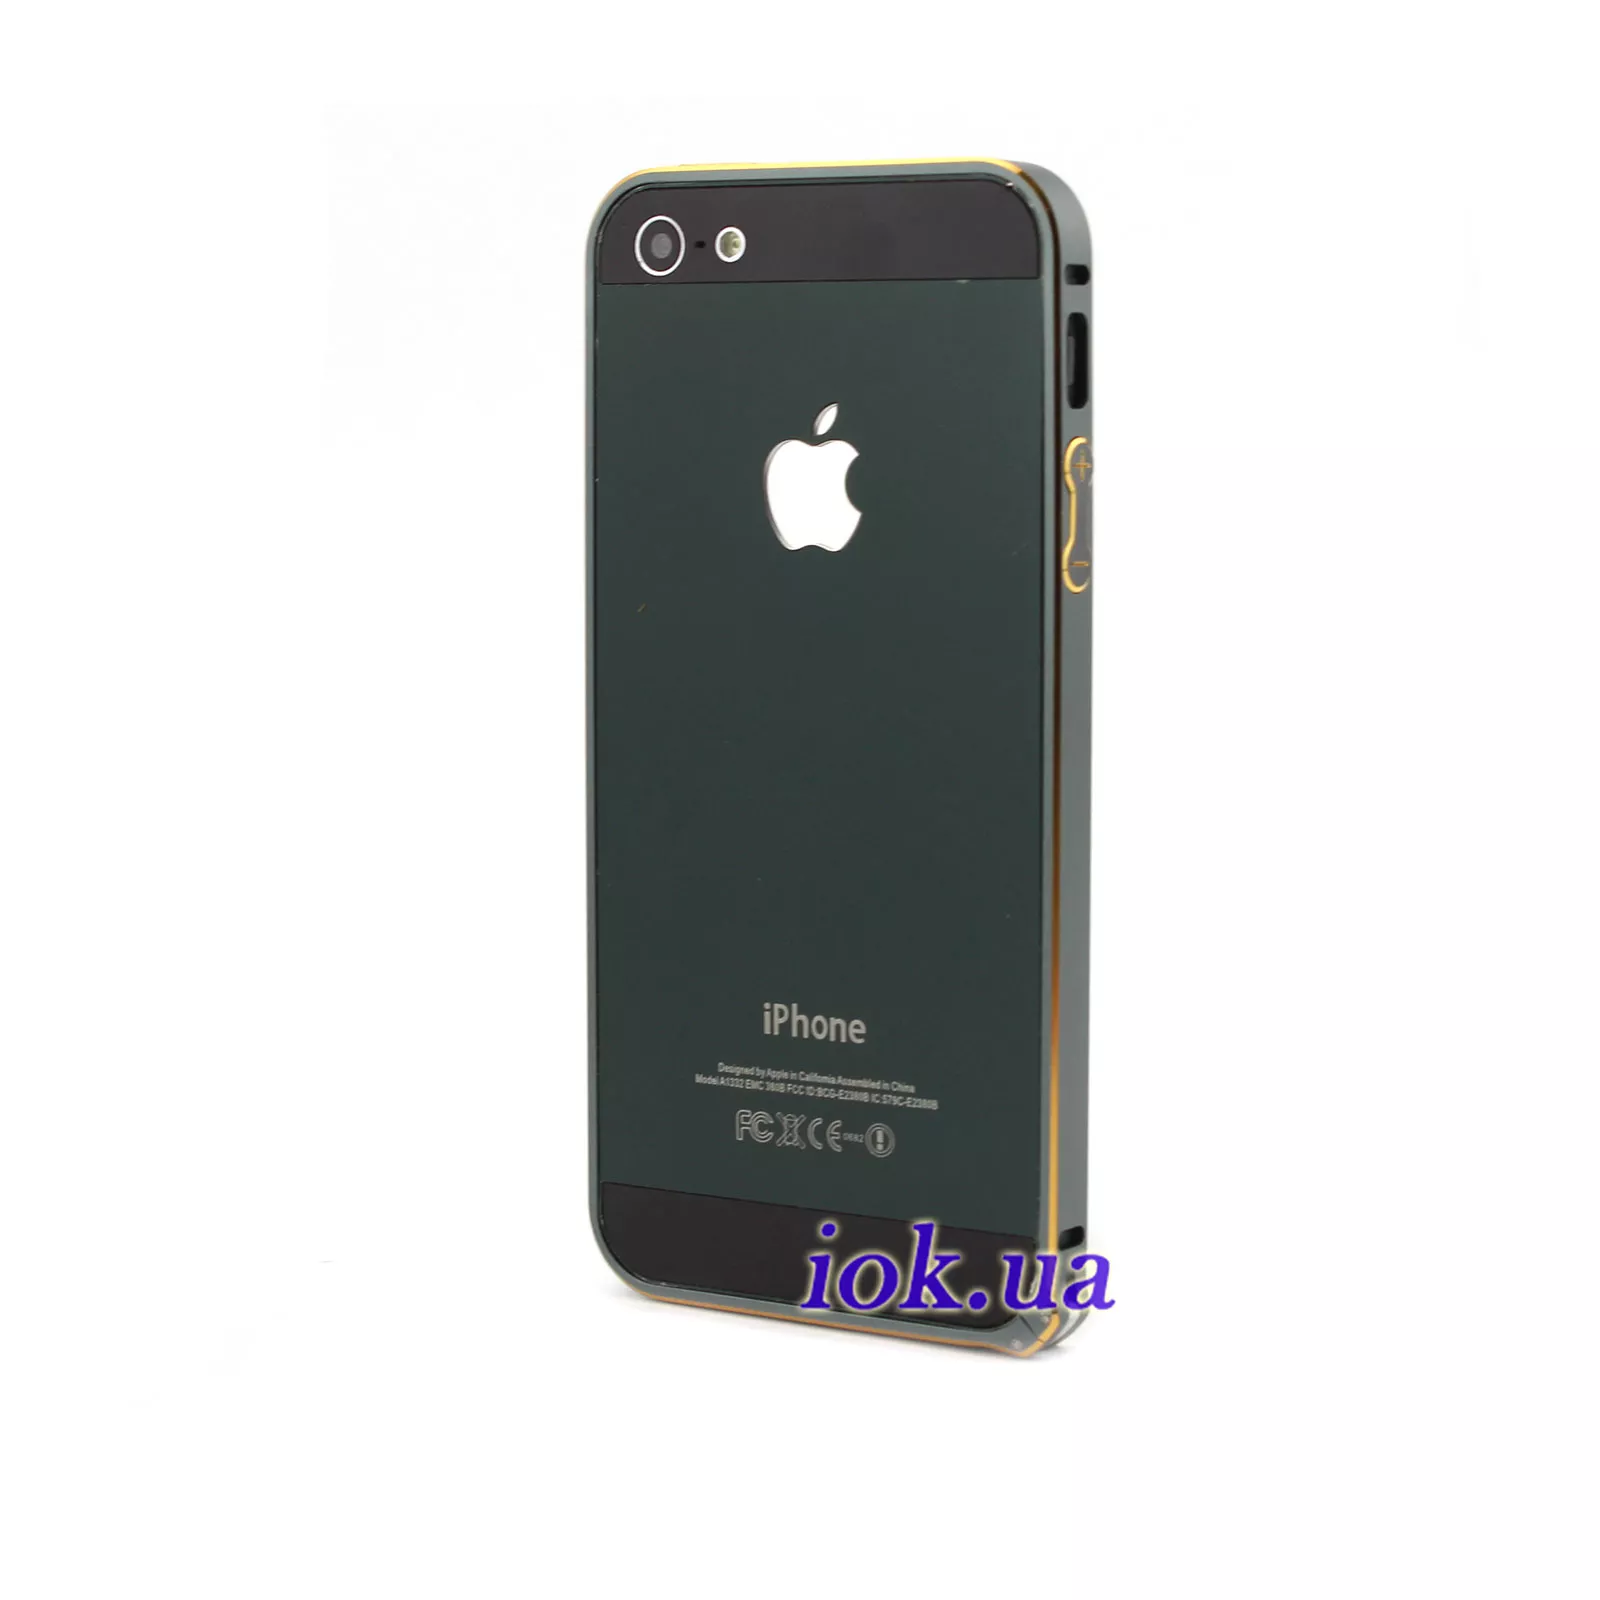 Ультра-тонкий бампер для iPhone 5/5S, графитовый и золотой